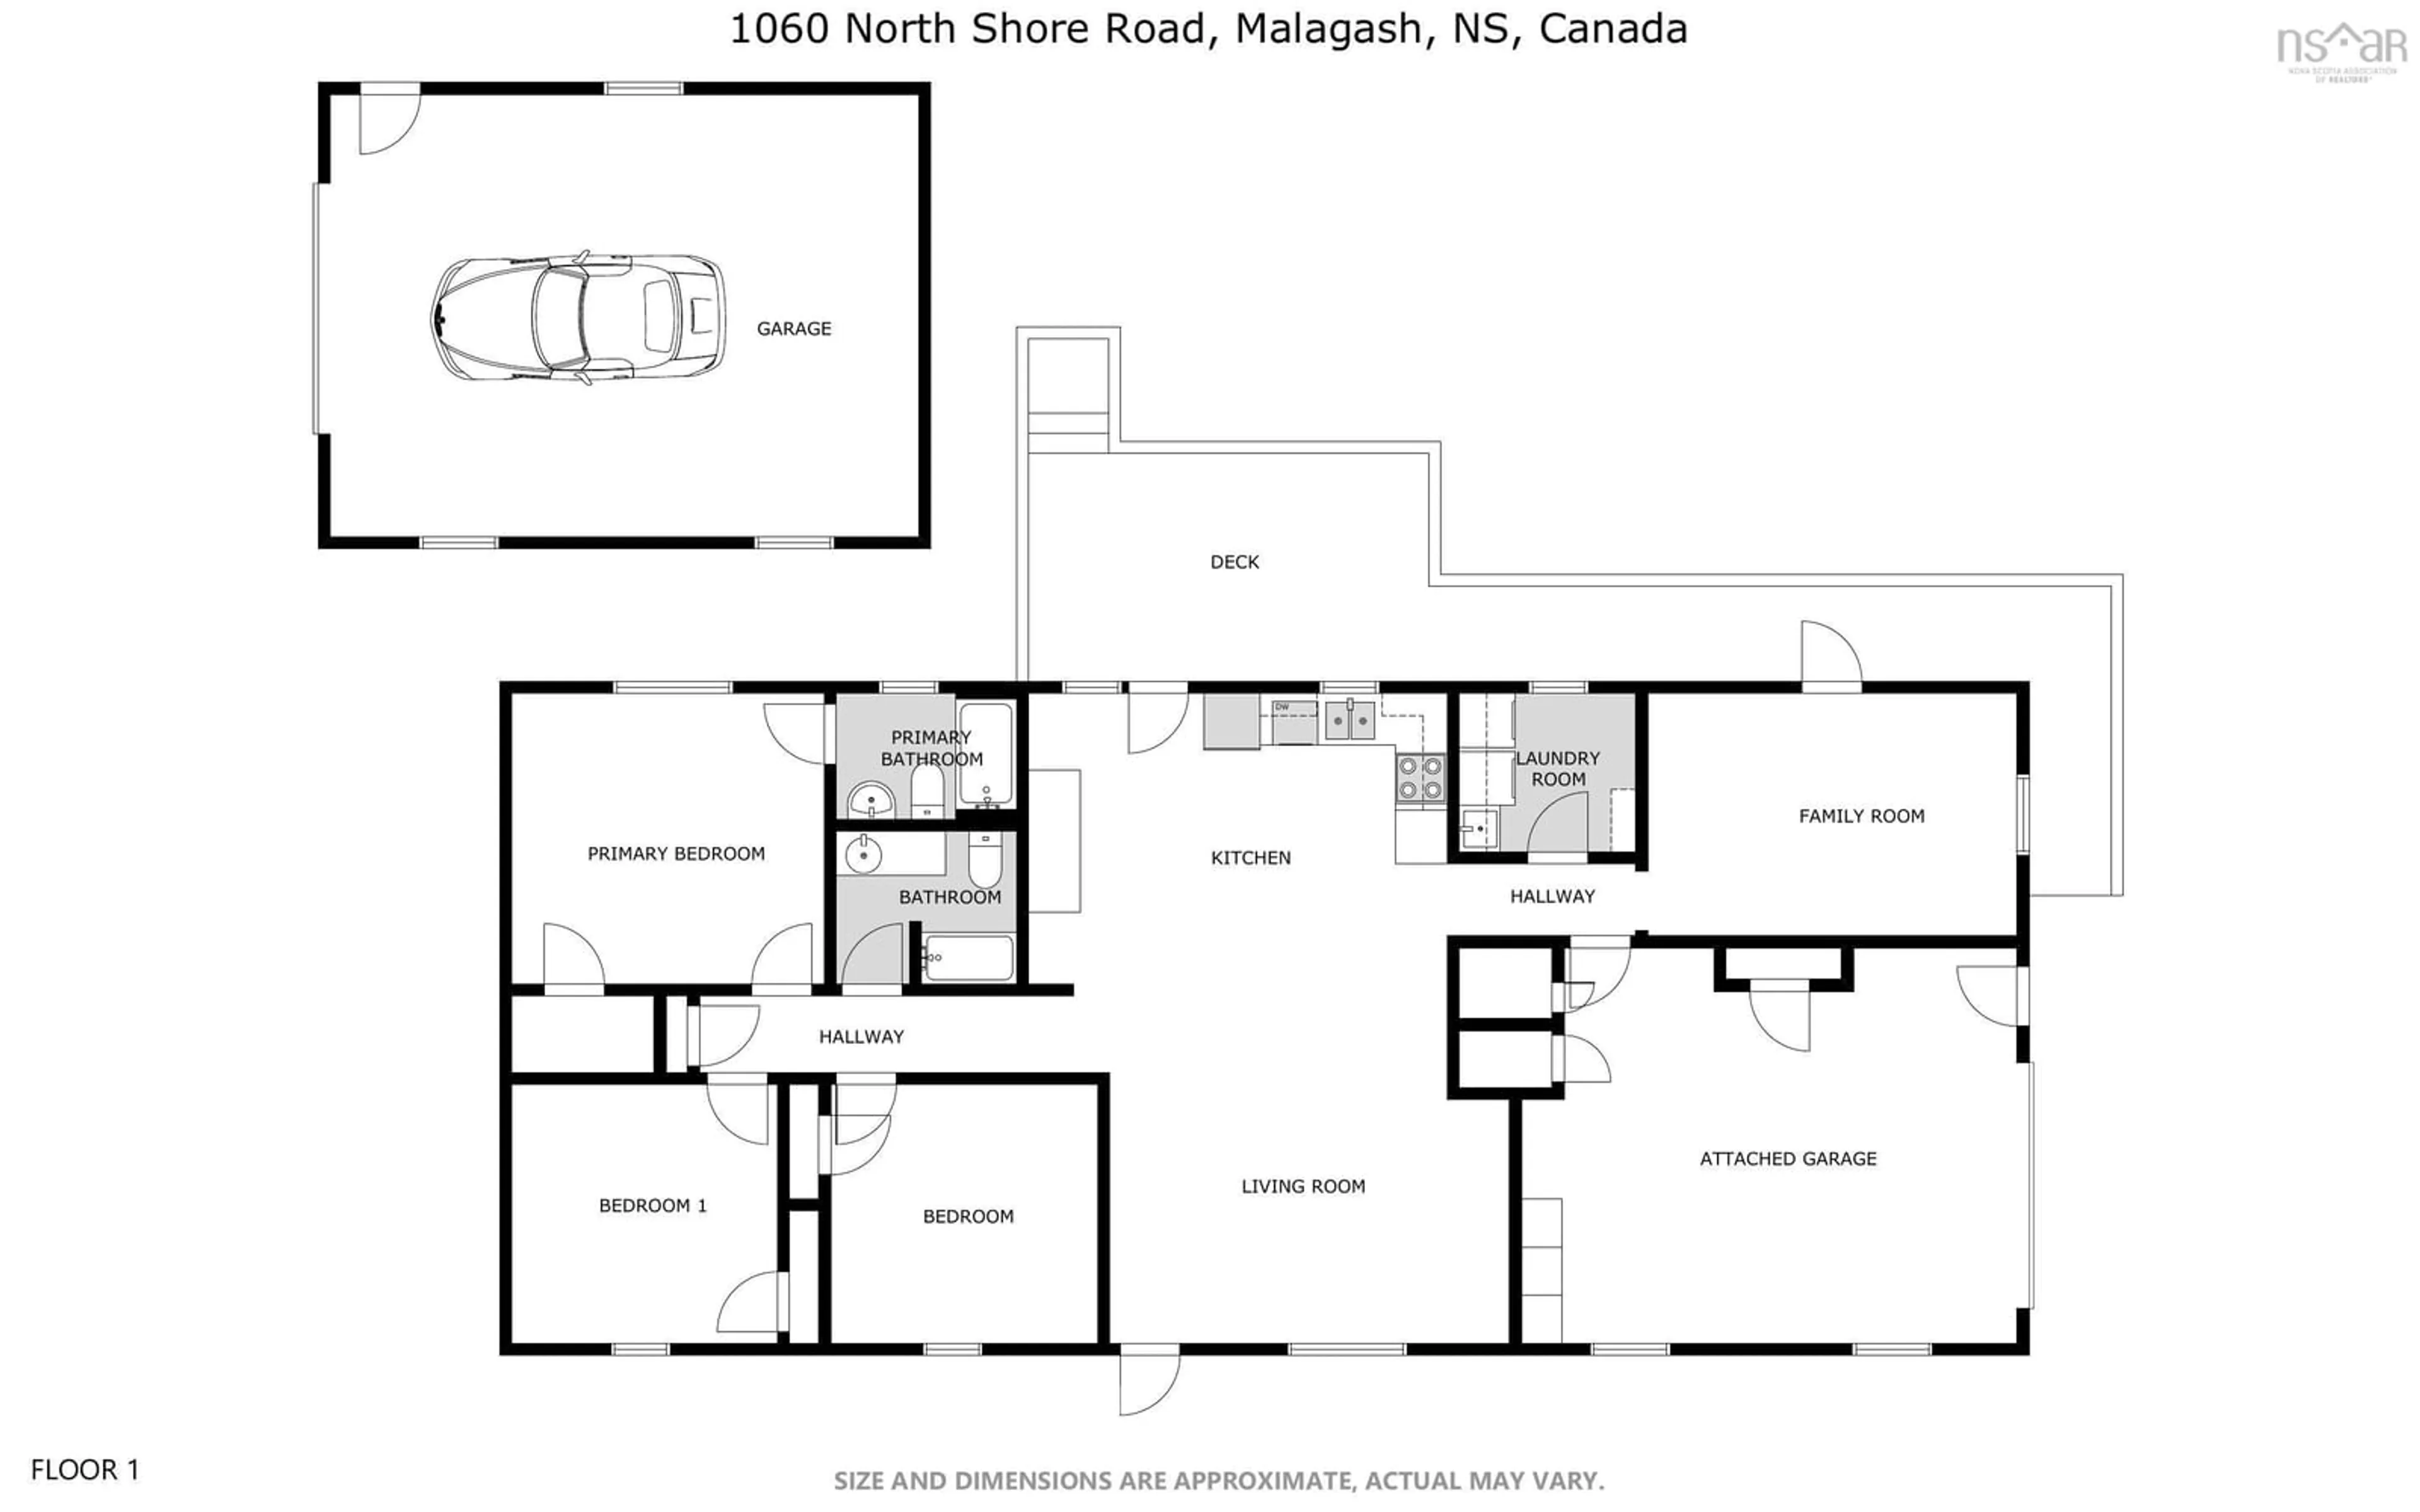 Floor plan for 1060 North Shore Rd, Malagash Nova Scotia B0K 1E0